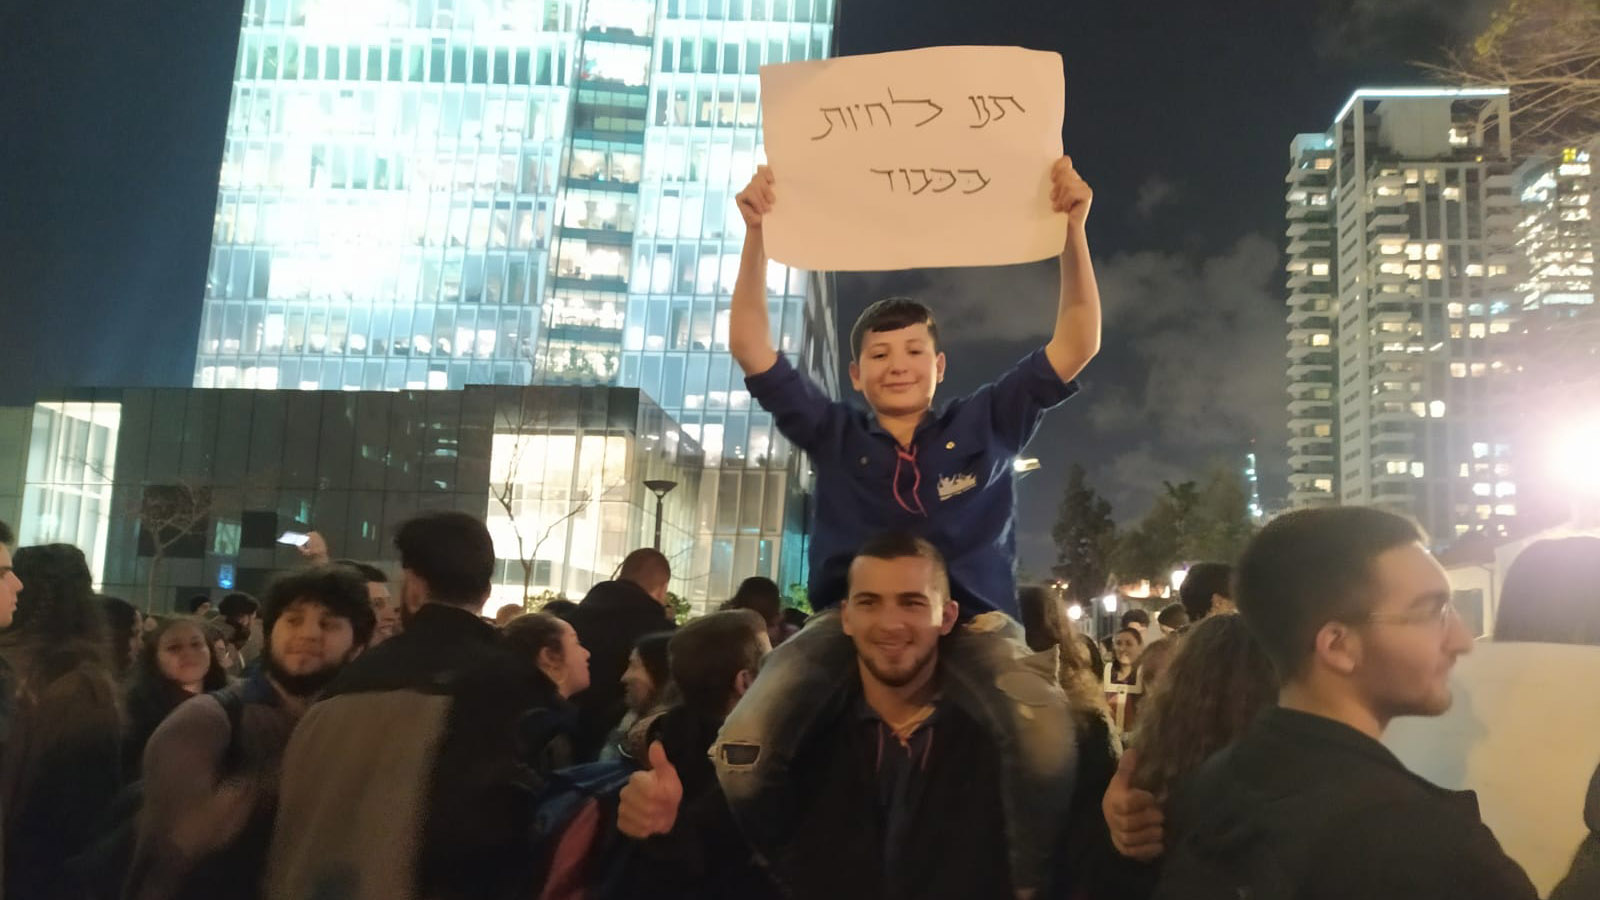 الاحتجاج من أجل رفع فوائد الإعاقة في تل أبيب ، 30 كانون الثاني (يناير) 2020 (تصوير: يهل فرج)